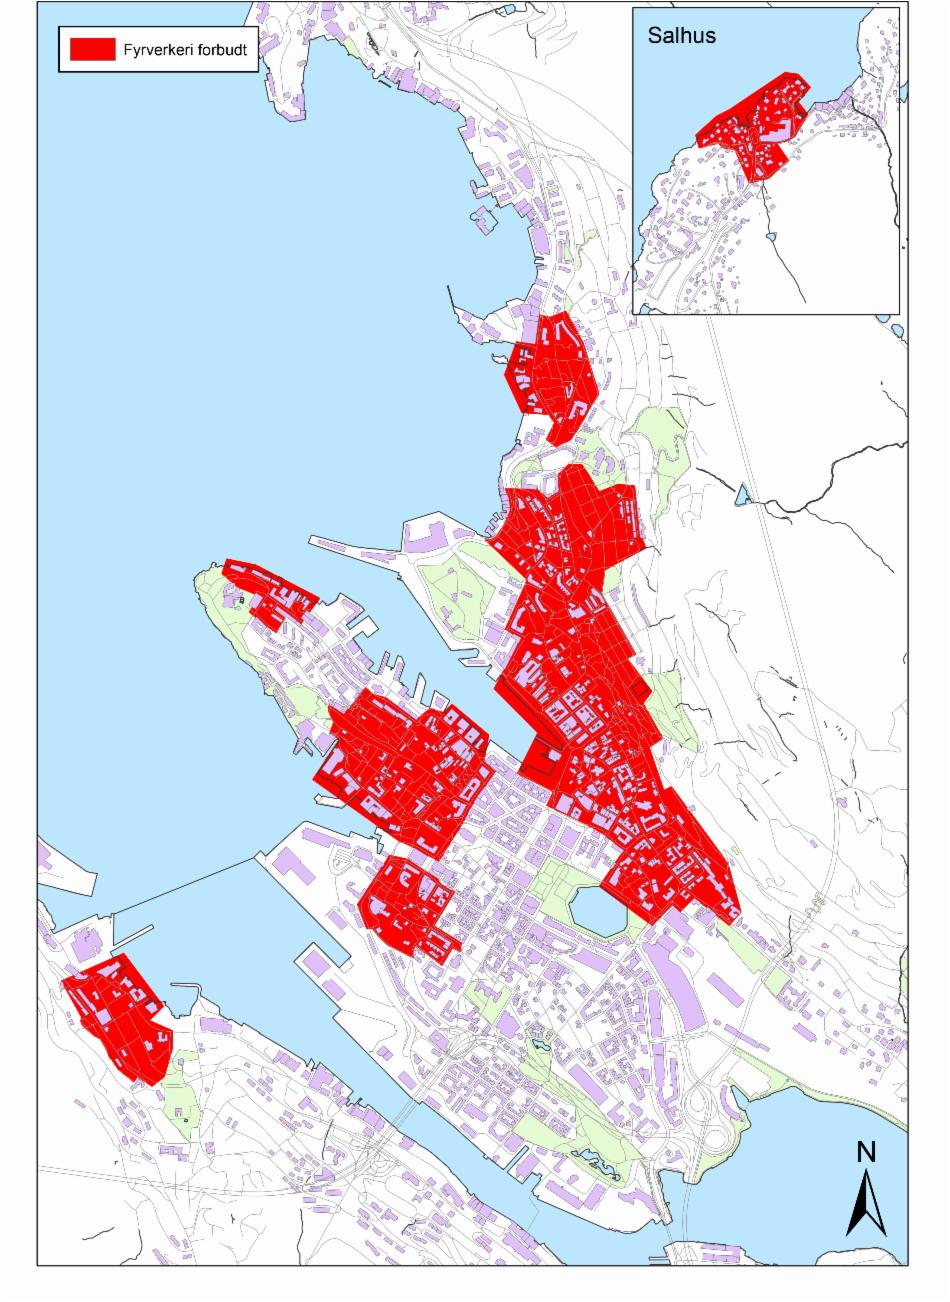 All bruk av fyrverkeri er forbudt innenfor områdene som er merket med rødt på kartet. 